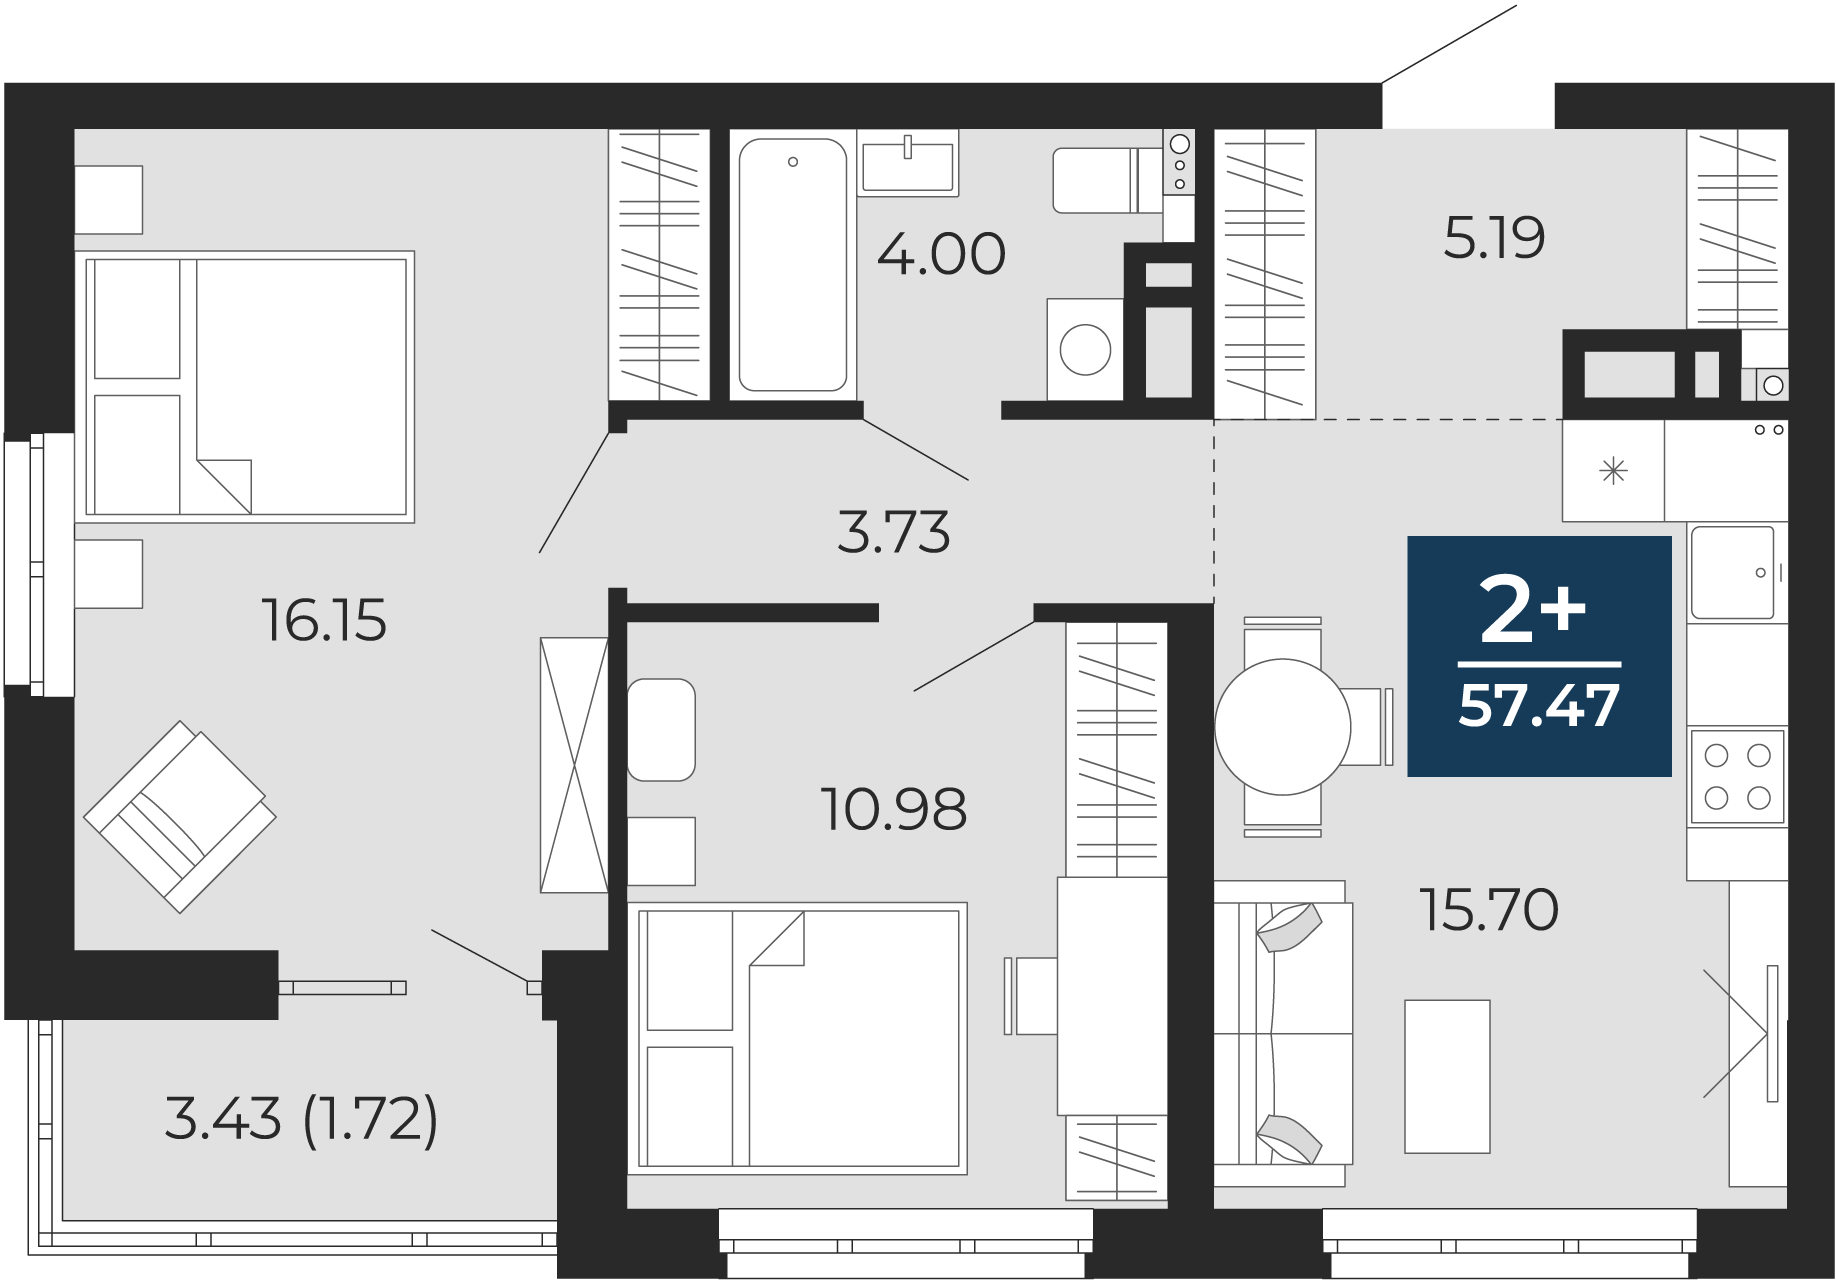 Квартира № 17, 2-комнатная, 57.47 кв. м, 3 этаж